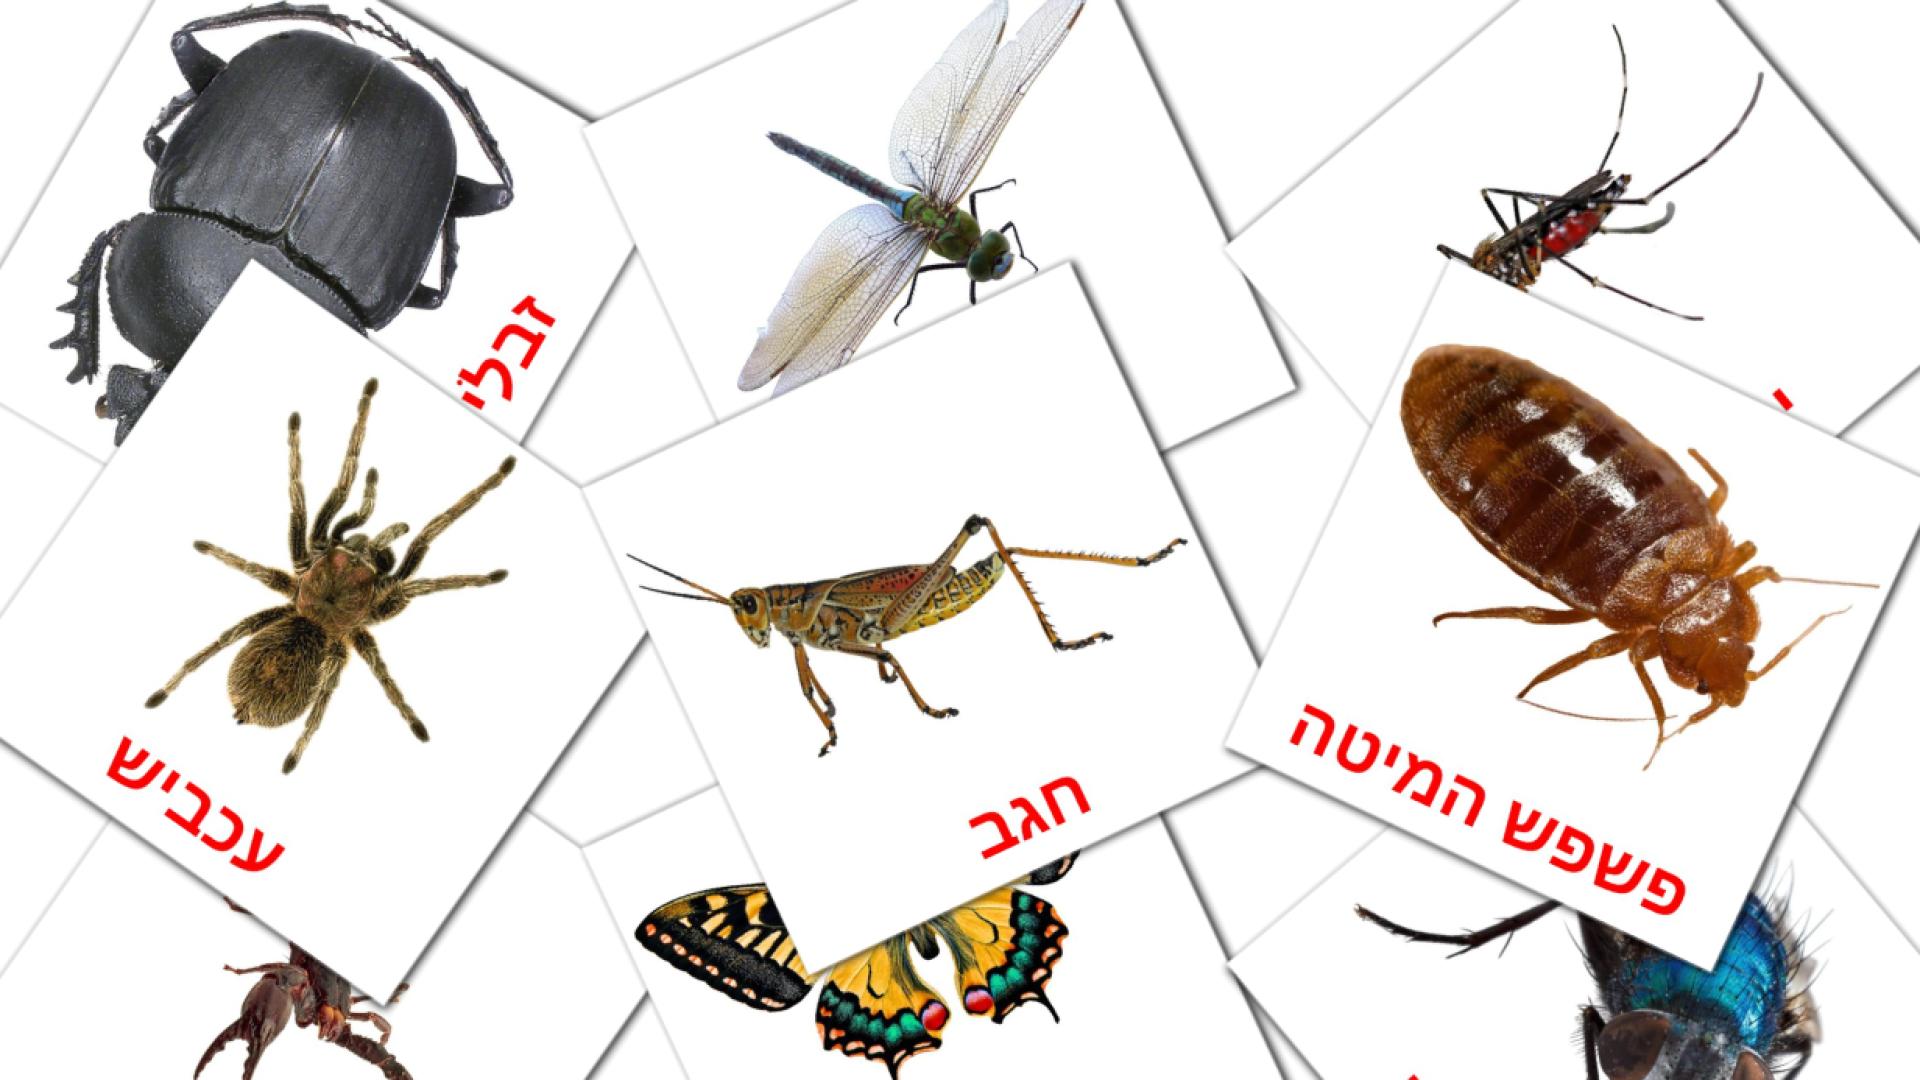 23 חרקים flashcards